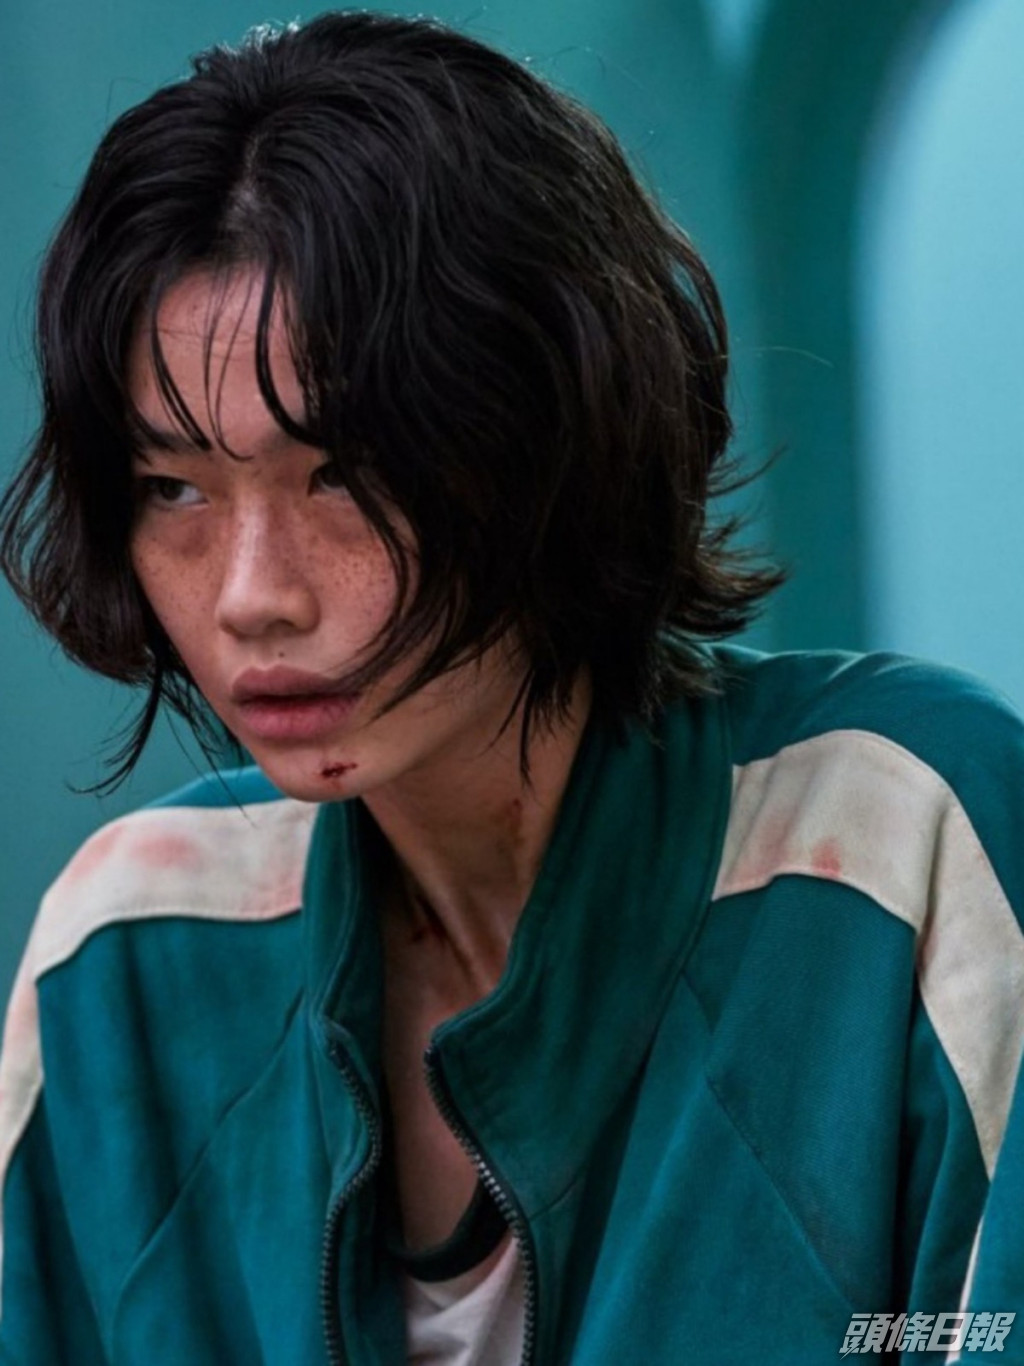 鄭浩妍飾演的角色第一季已經死咗，或會以雙胞胎的身分演出新一季。